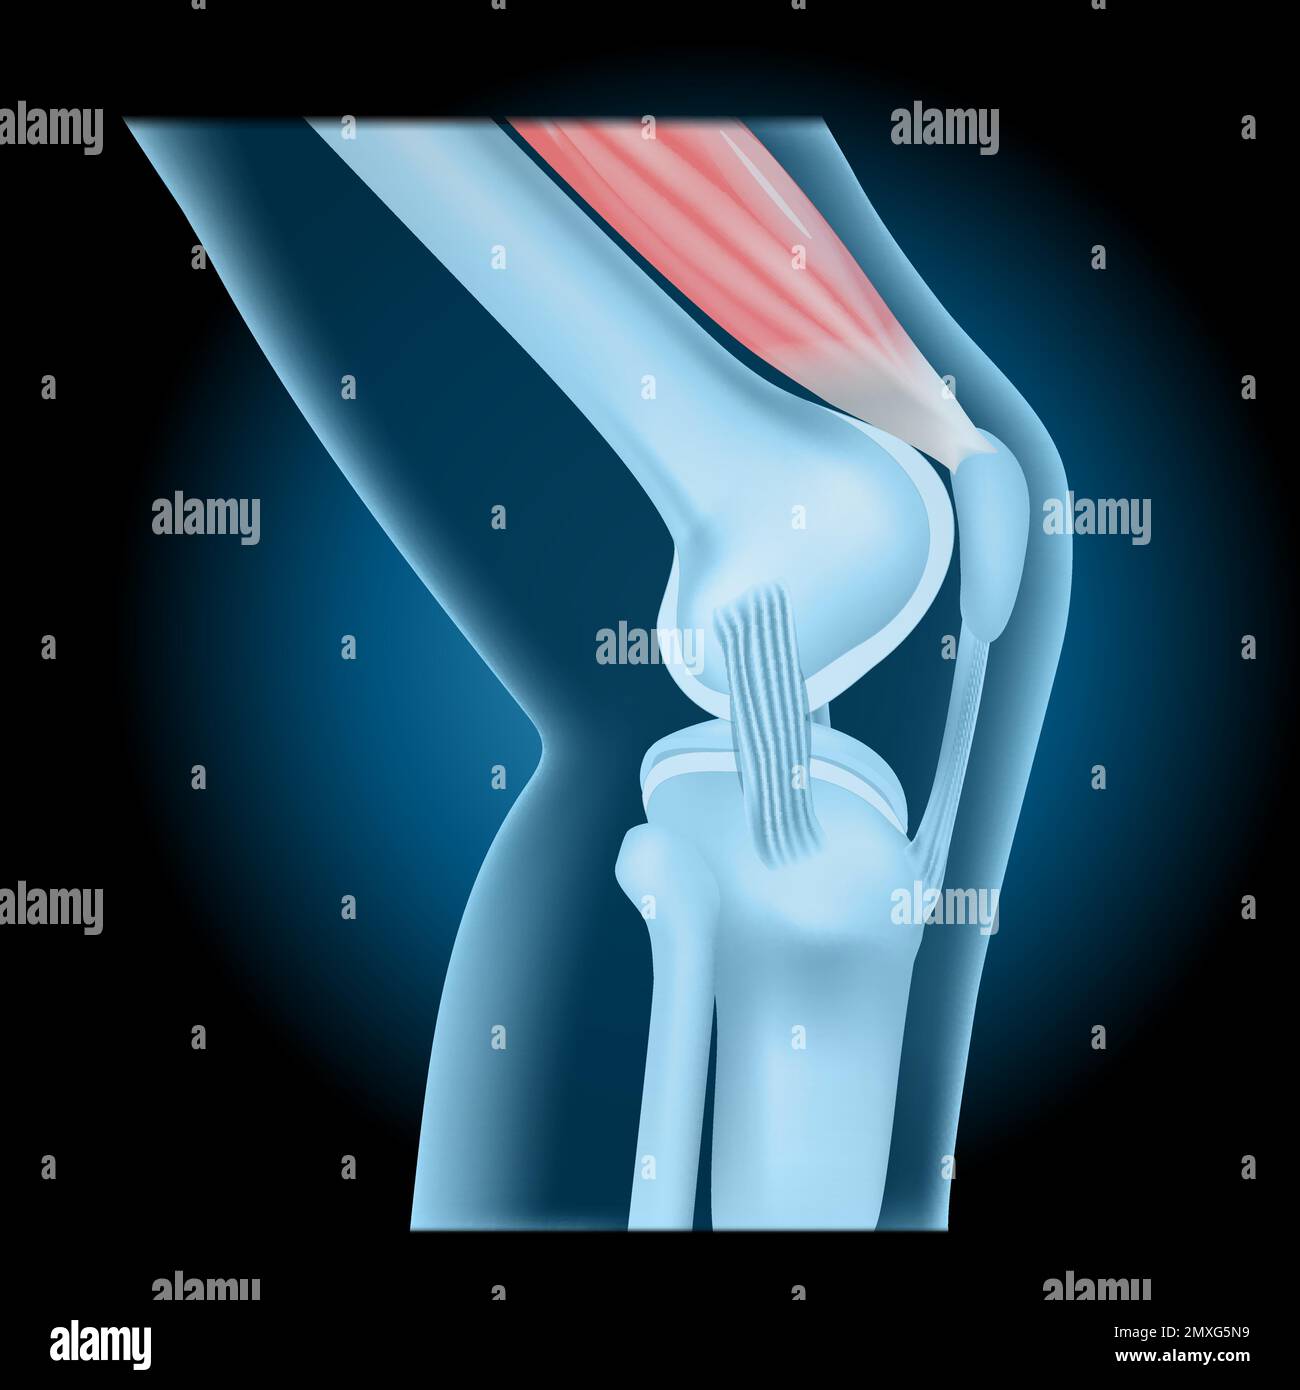 Articolazione del ginocchio con quadricipite. vista laterale del ginocchio umano con effetto incandescente. Giunto blu trasparente realistico su sfondo scuro. illustrazione vettoriale Illustrazione Vettoriale